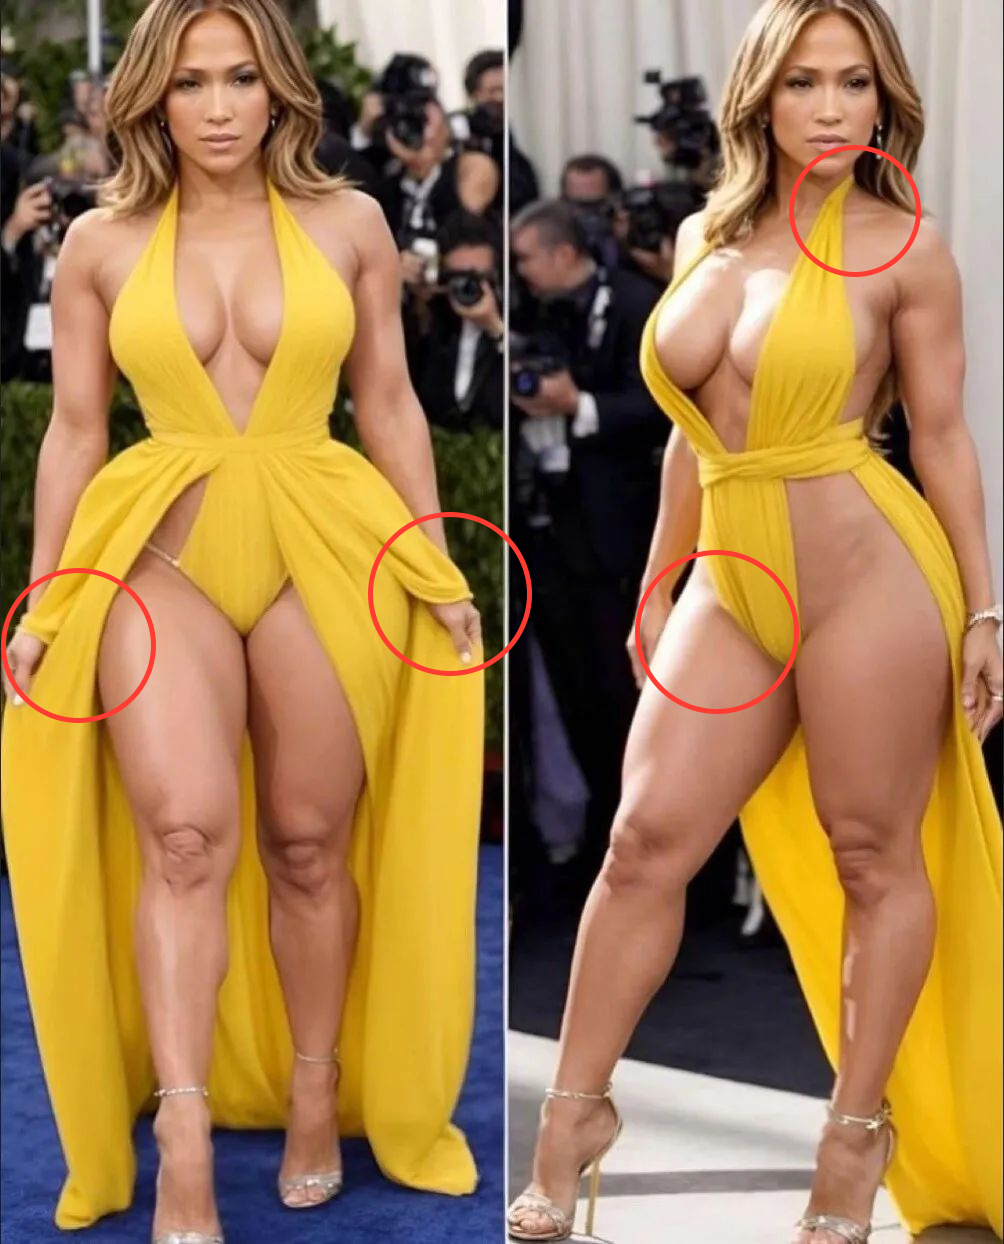 Imagem criada por IA mostra Jennifer Lopez com vestido amarelo; círculos vermelhos apontam inconsistências